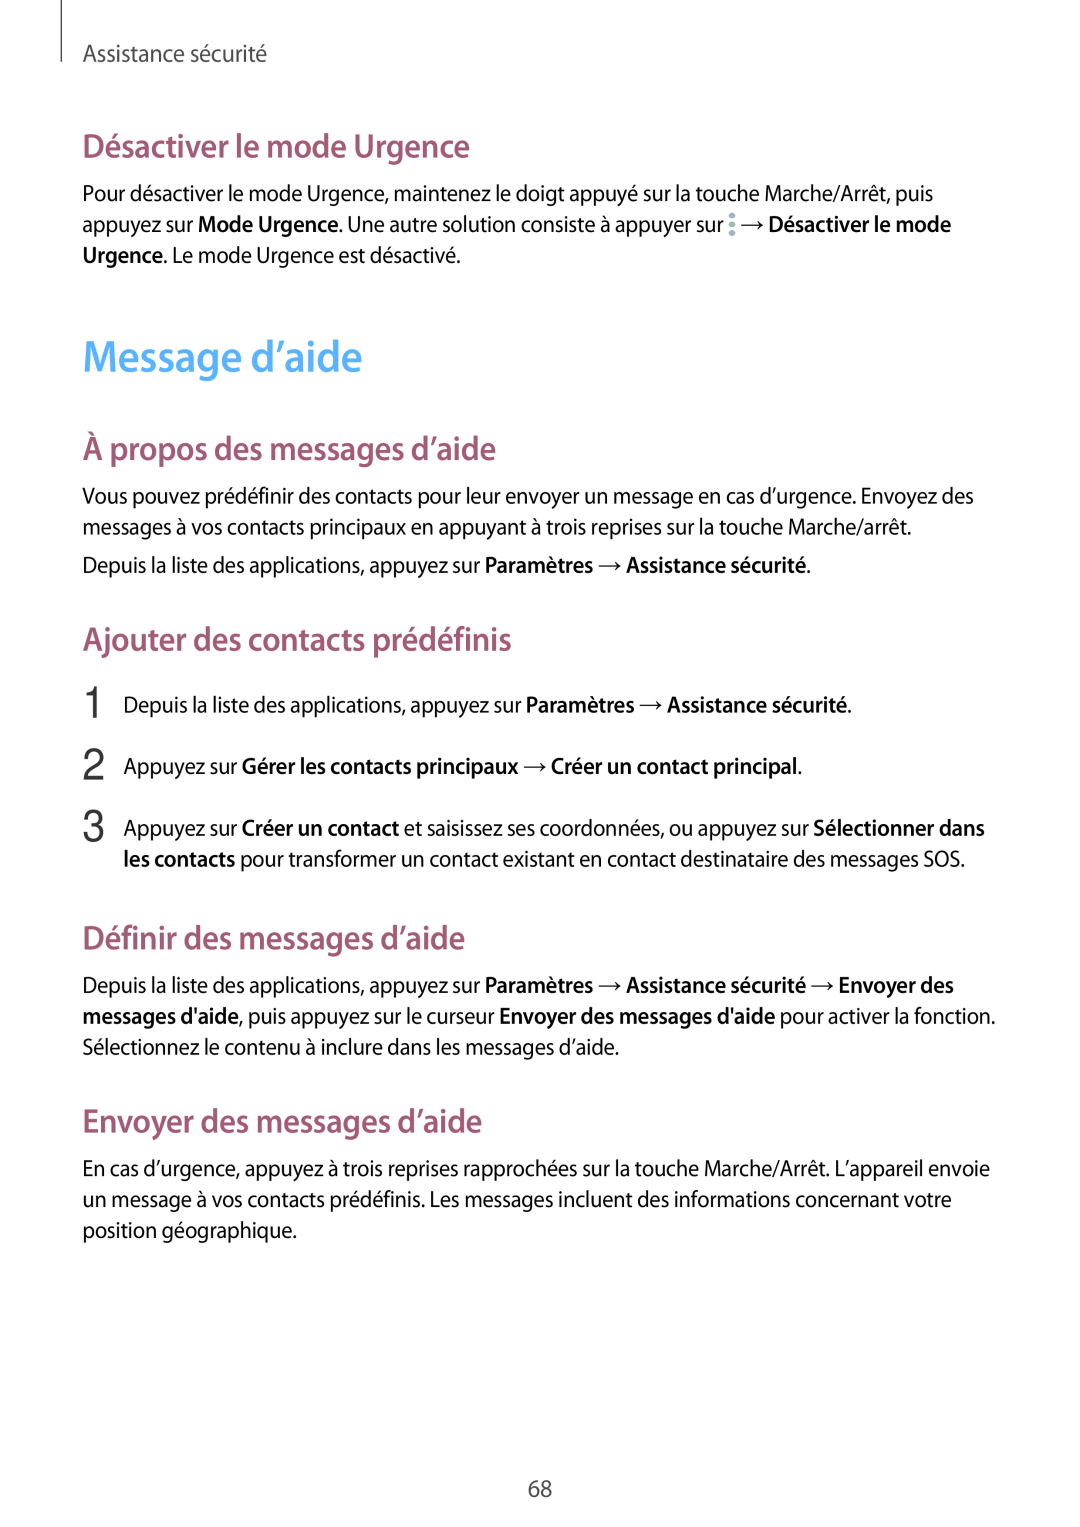 Samsung SM-A300FZKUSFR manual Message d’aide, Désactiver le mode Urgence, À propos des messages d’aide, Assistance sécurité 